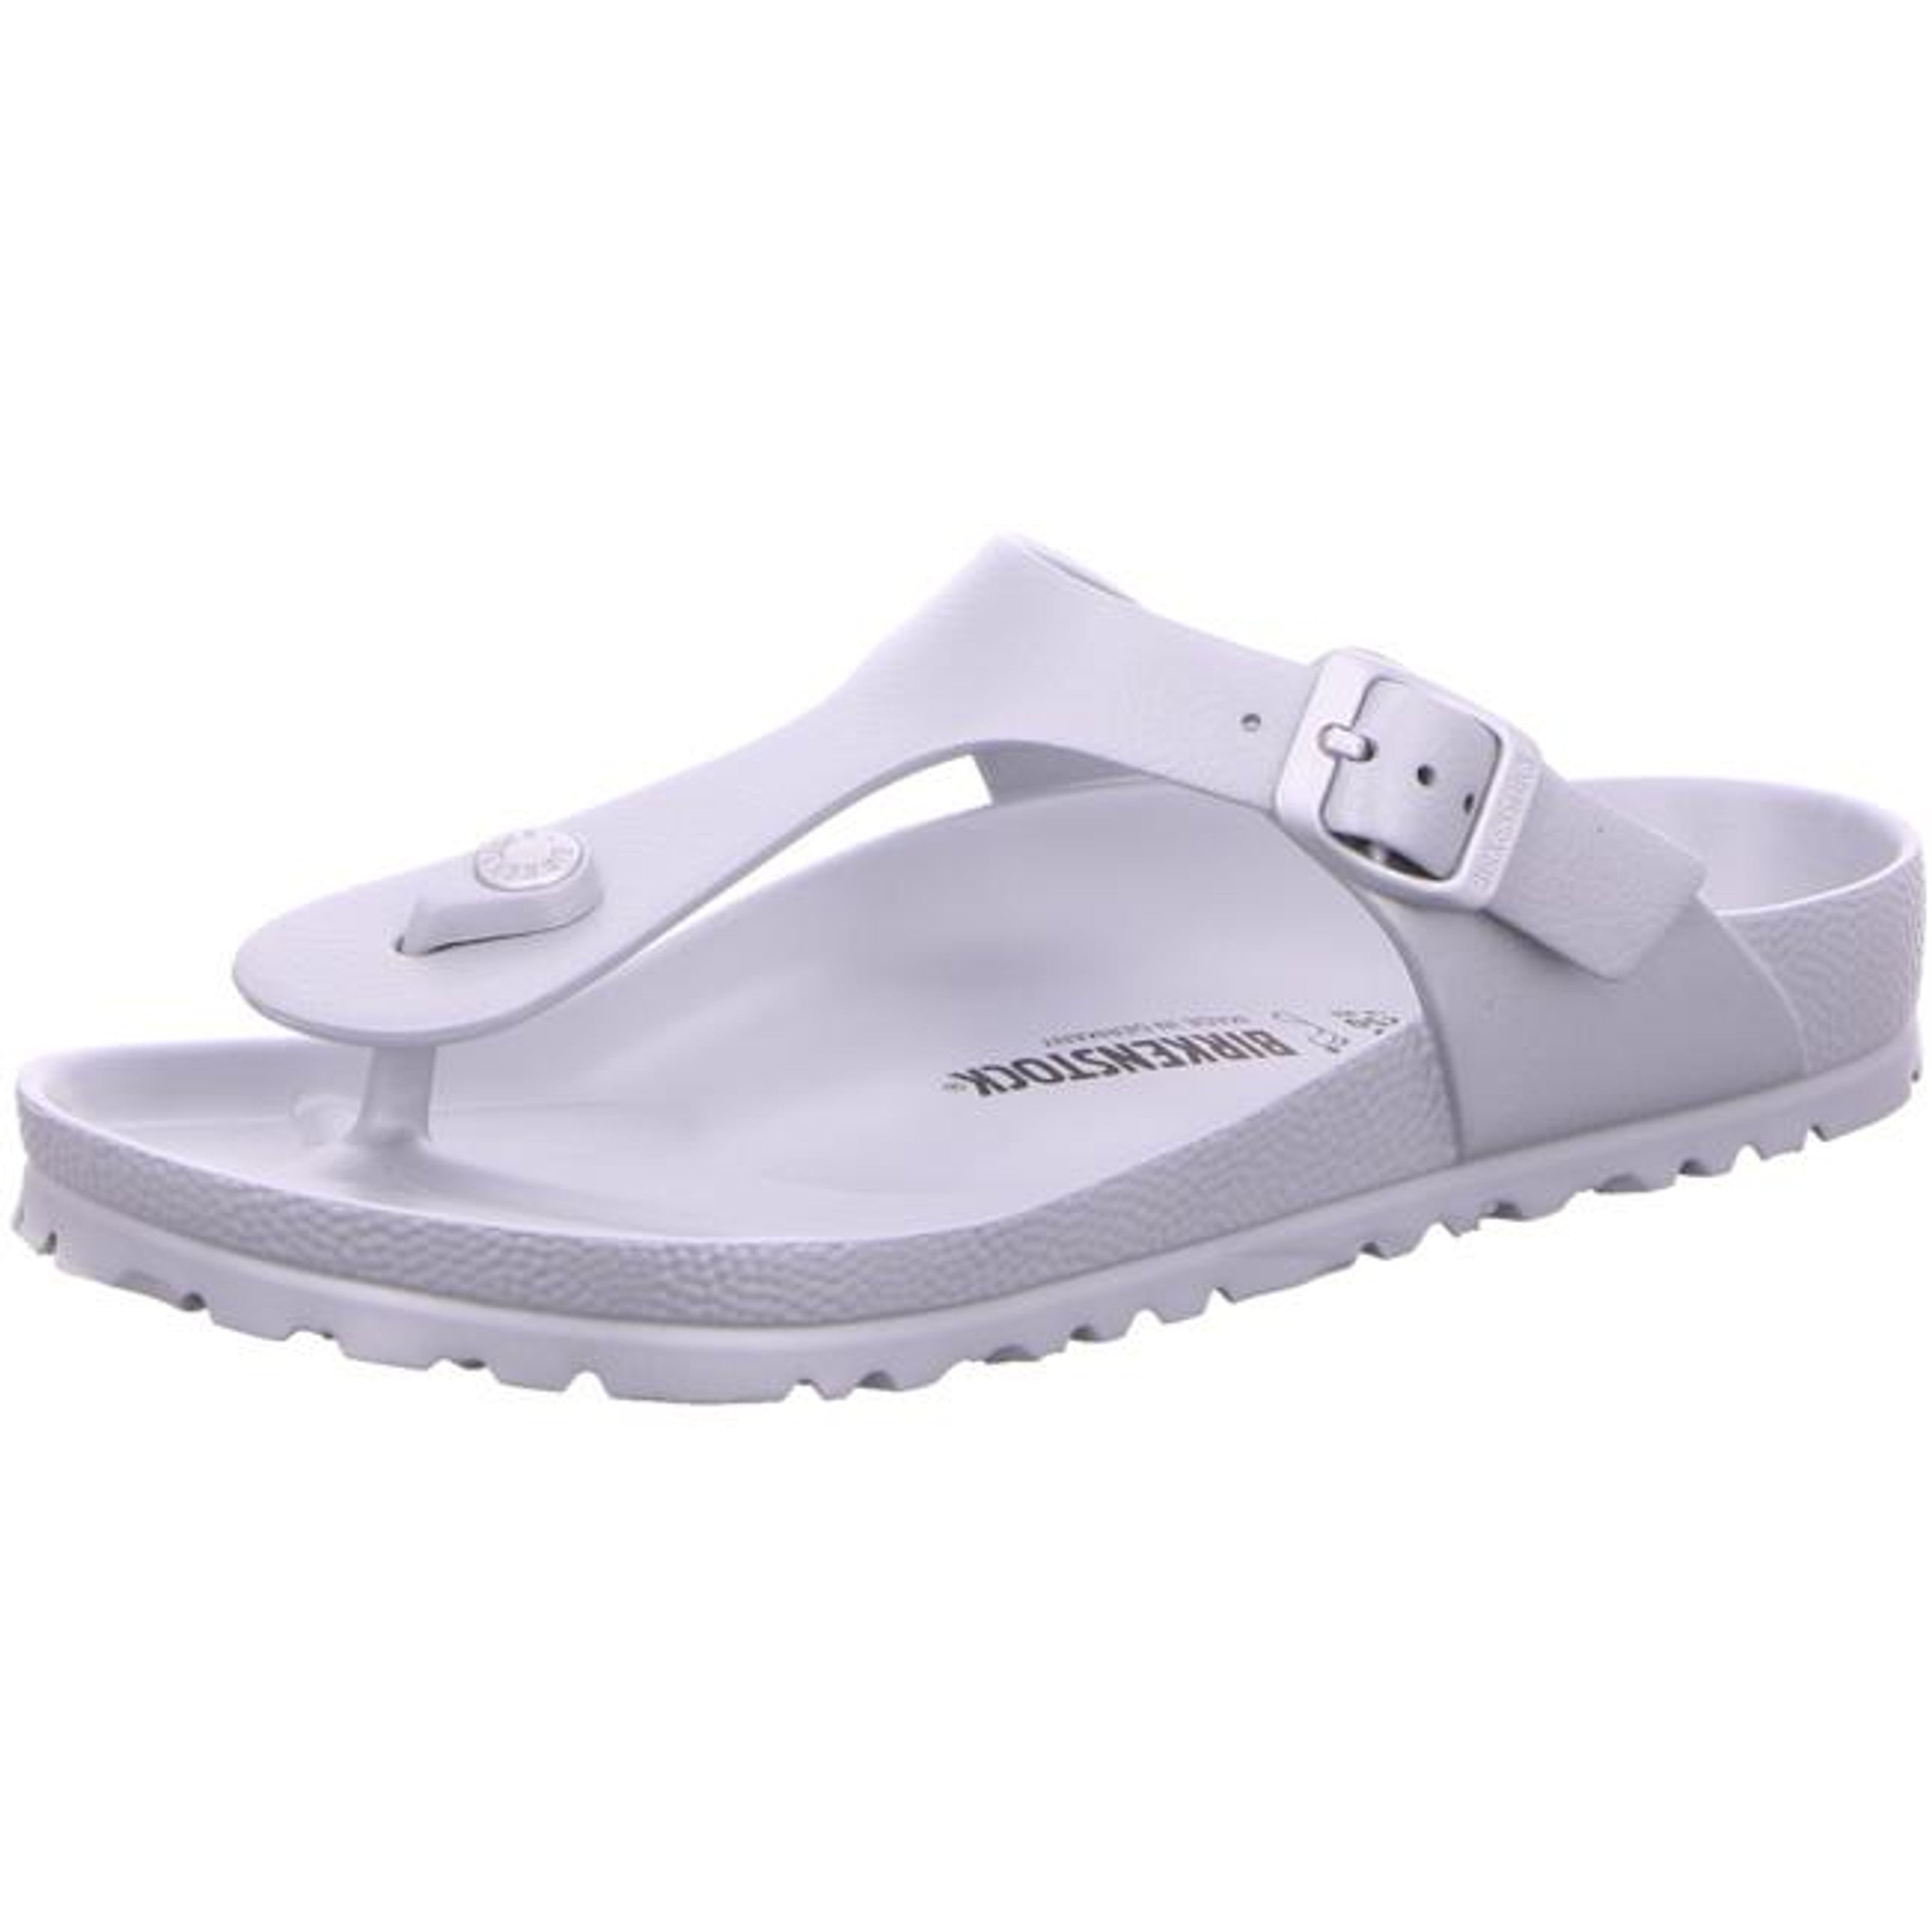 Birkenstock Gizeh Beach EVA Waterproof Slide Sandals Shoes Flip-Flops silver metallic regular - Bartel-Shop